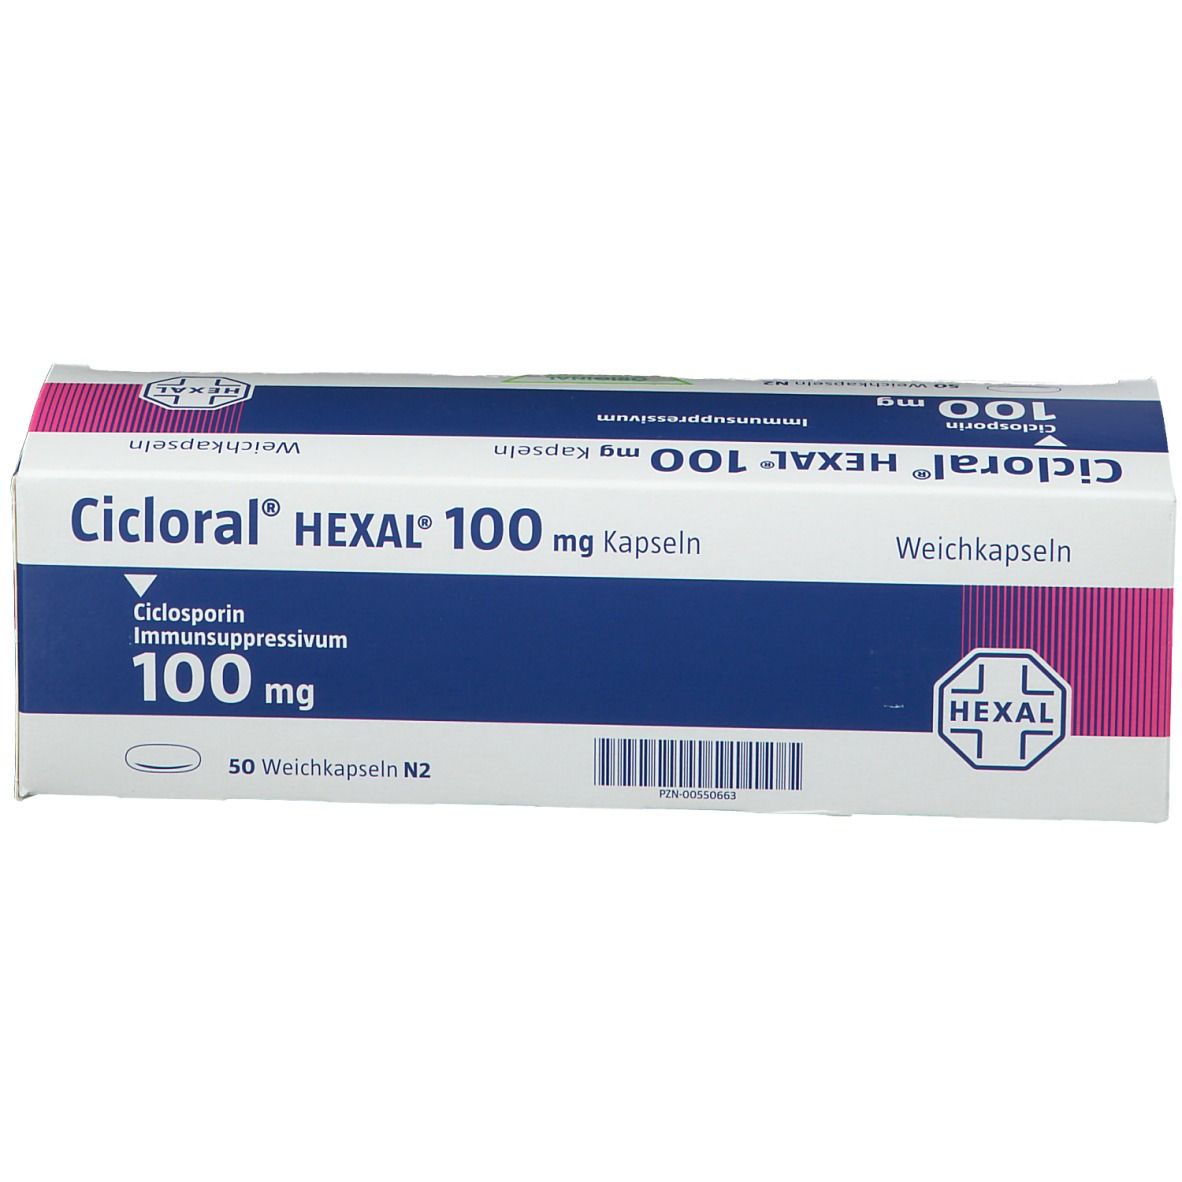 Cicloral® HEXAL® 100 mg